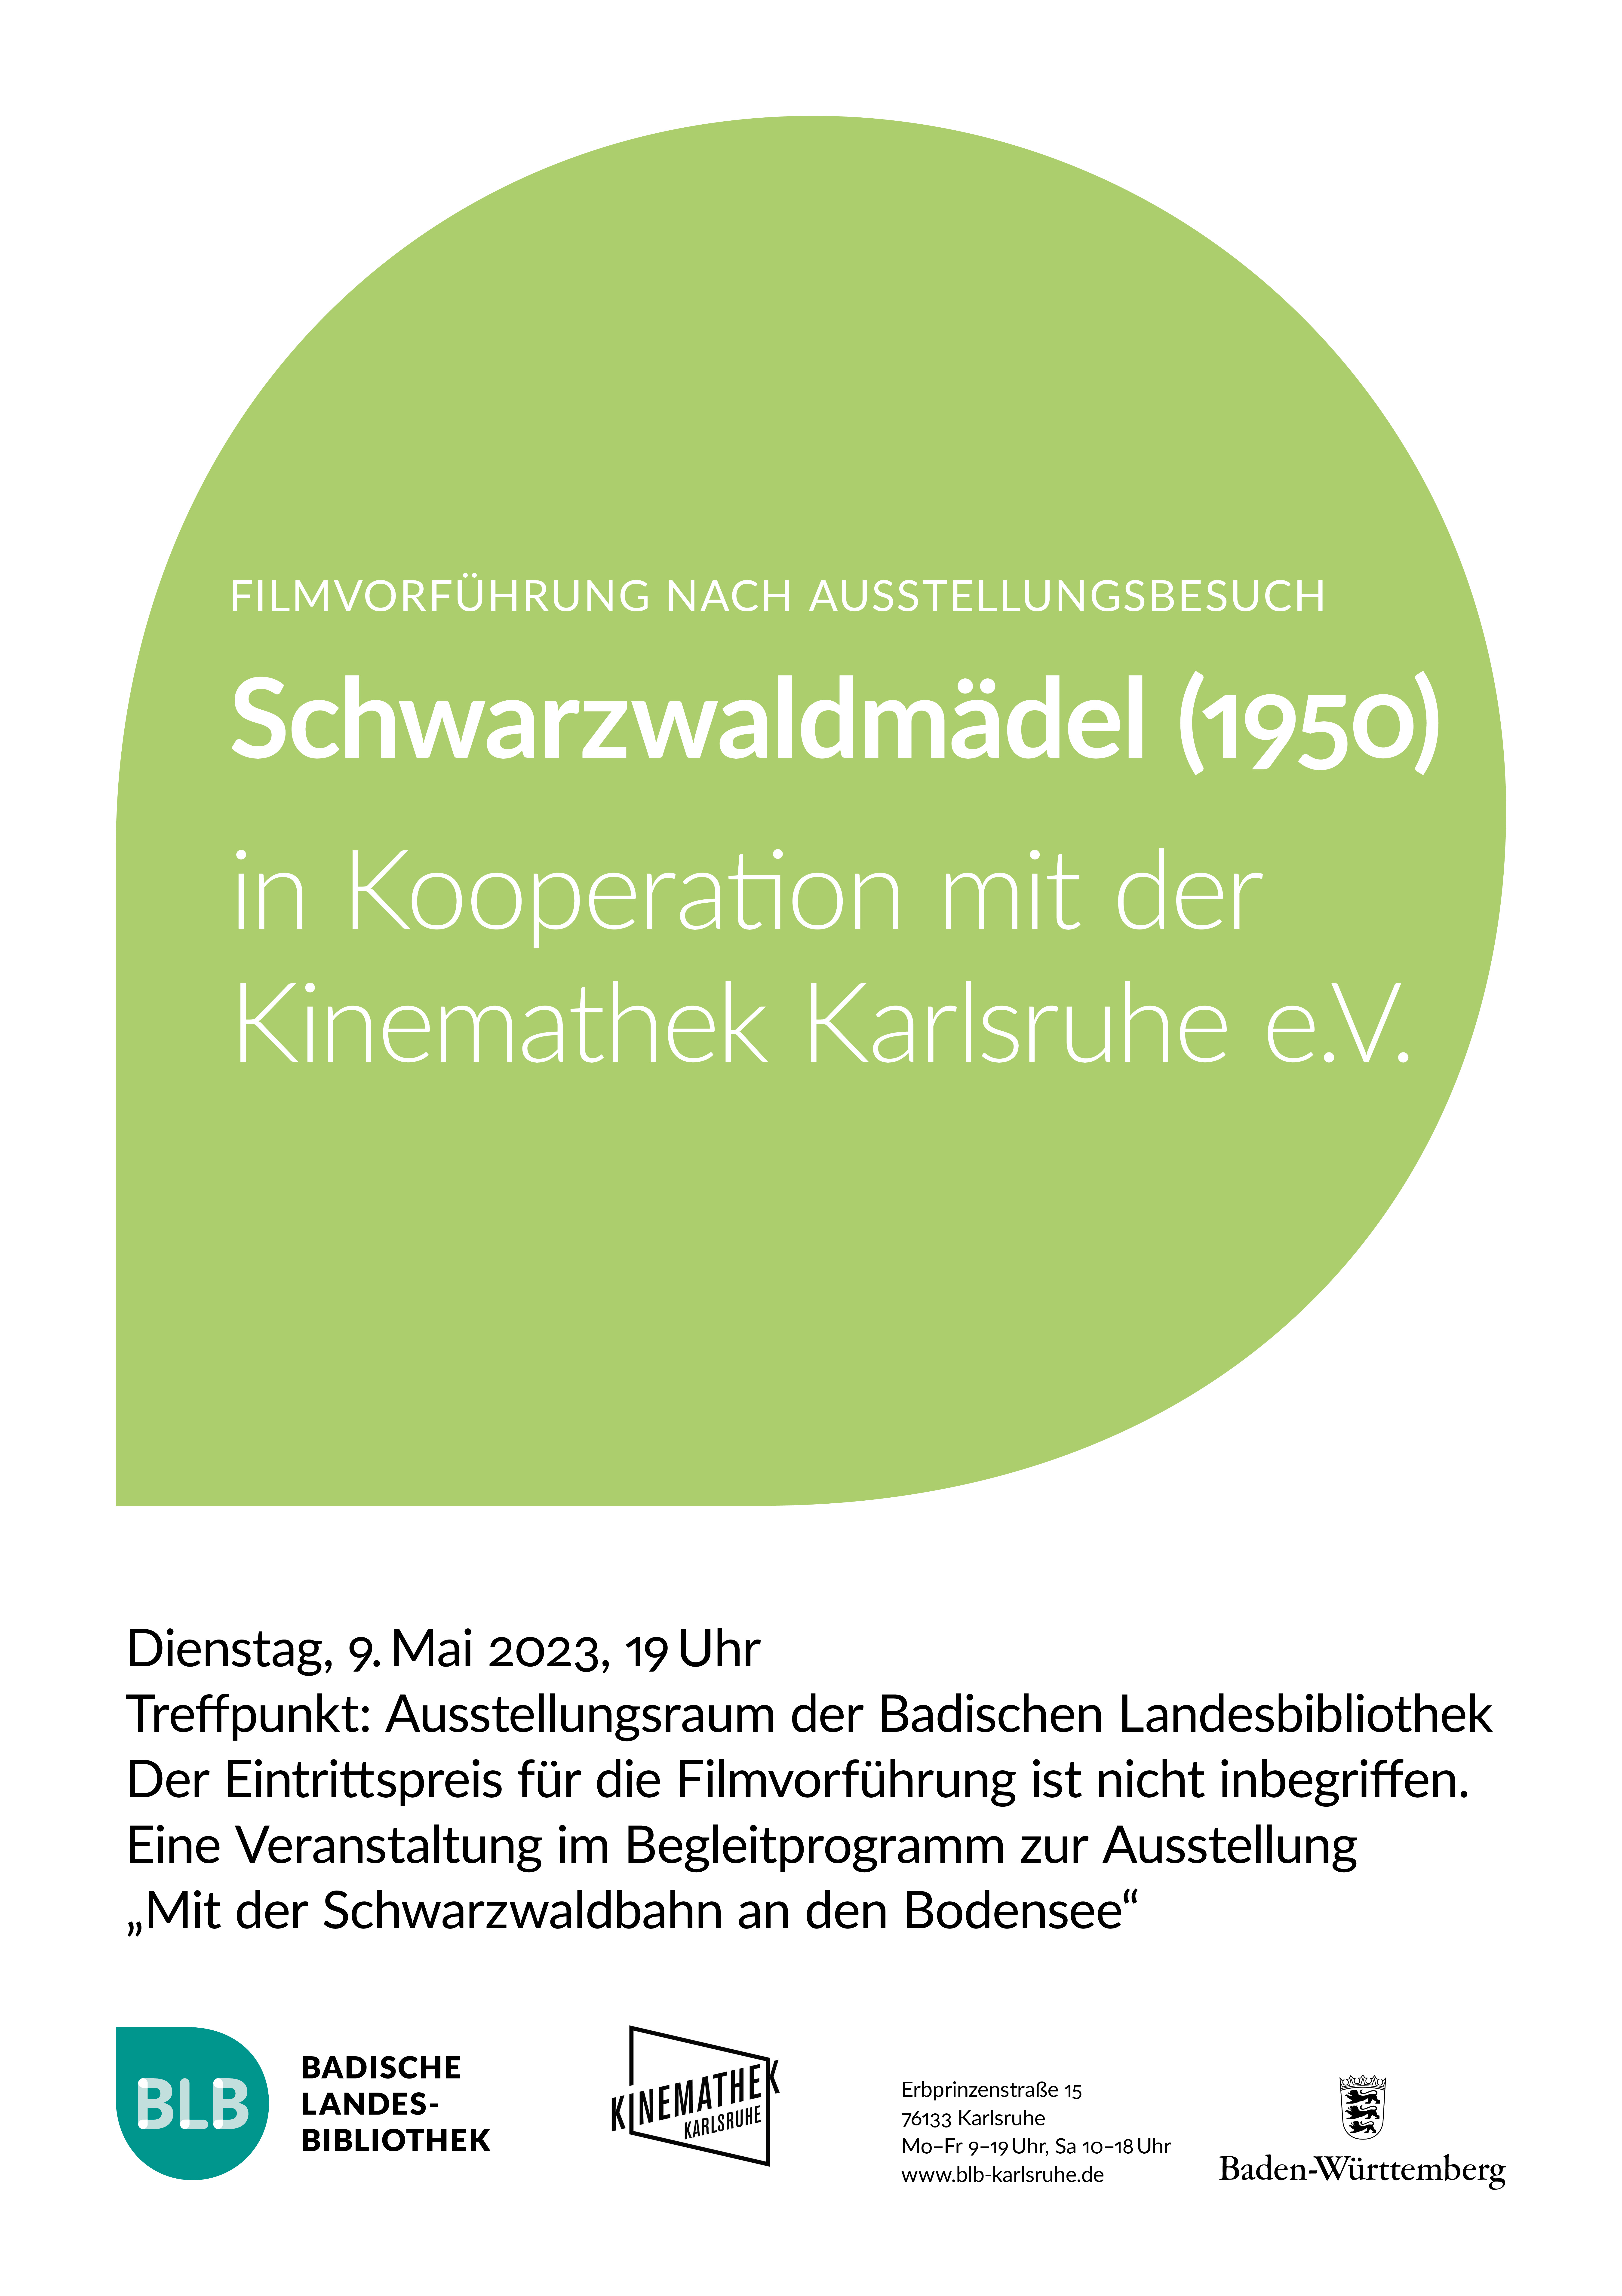 Zu sehen ist ein grünes Monogon mit der Aufschrift "Schwarzwaldmädel 1950", eine Filmvorführung nach Ausstellungsbesuch in Kooperation mit der Kinemathek Karlsruhe am Dienstag, den 9. Mai 2023 um 19 Uhr.